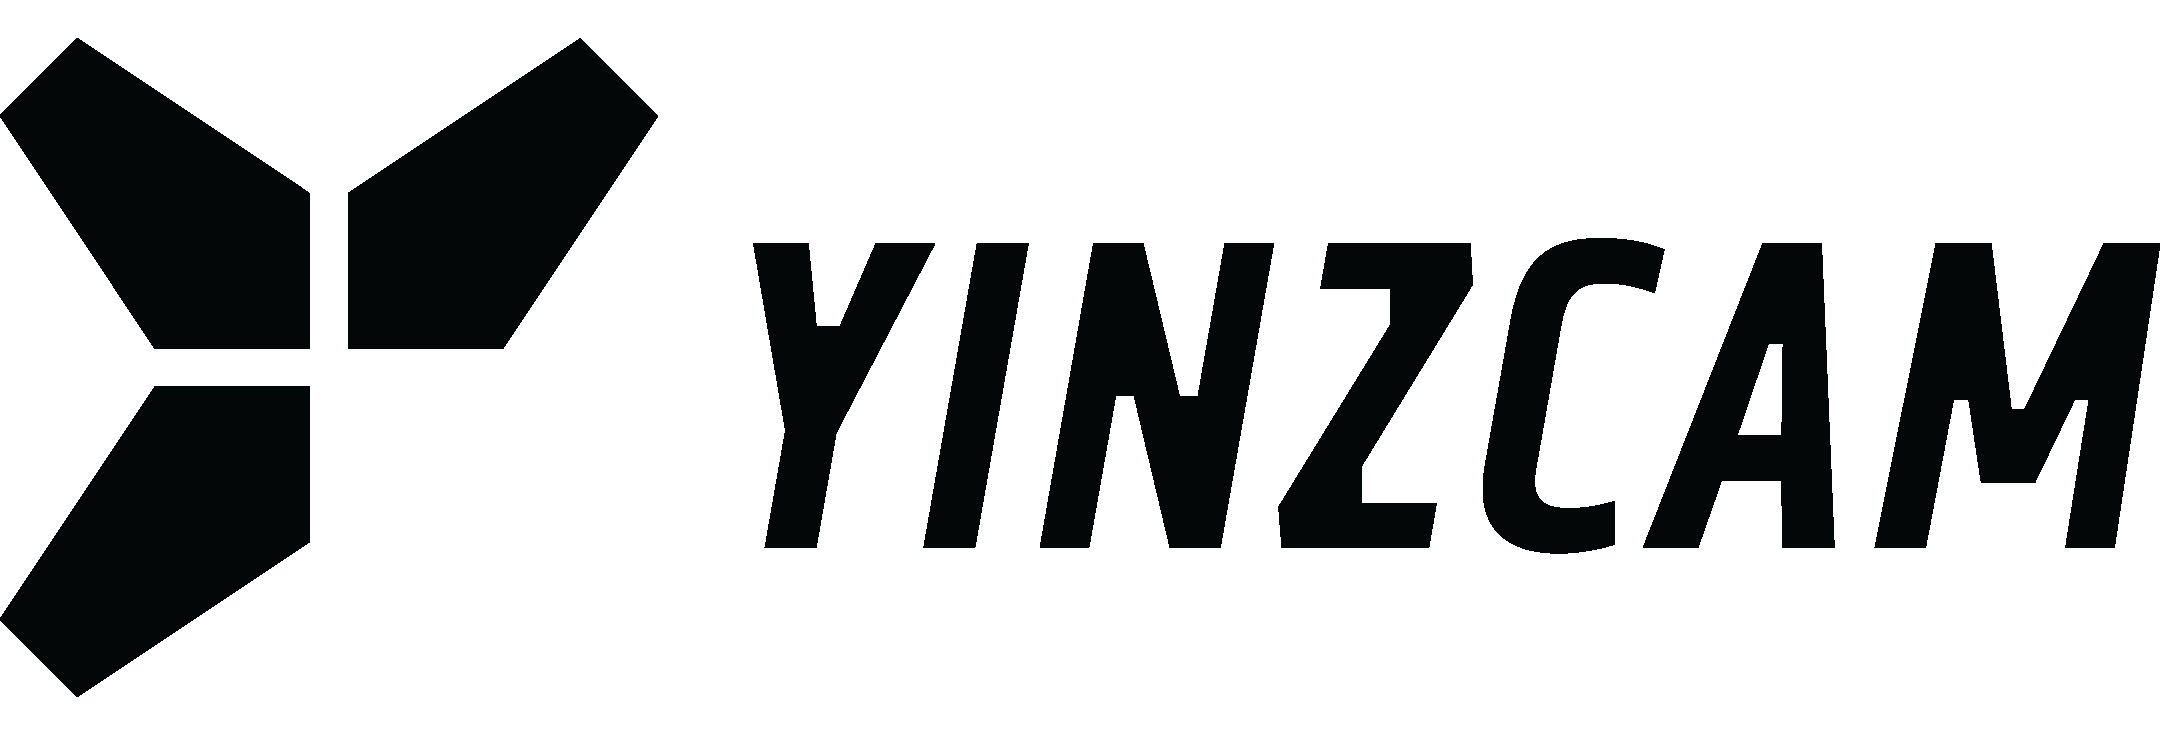 Contact – YinzCam, Inc.